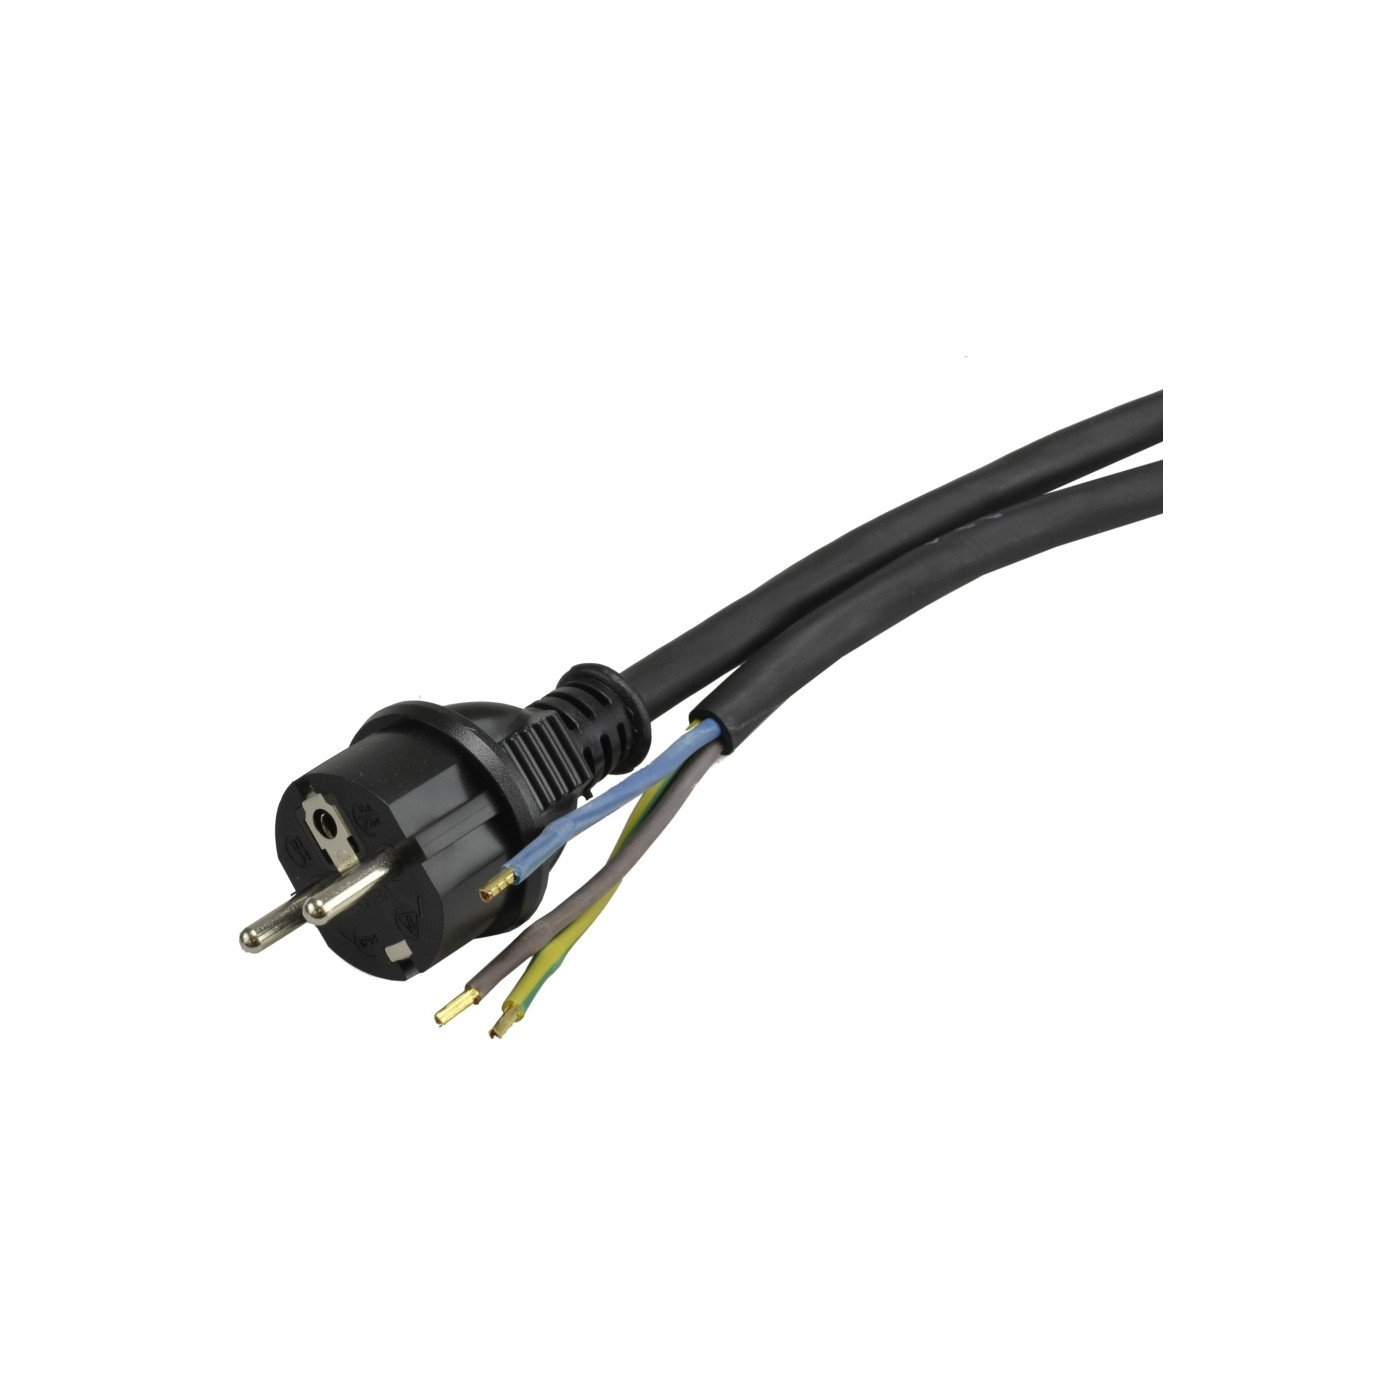 https://probaumarkt.de/9405-large_default/anschlussleitung-3-x-1-mm-anschlusskabel-13-m-mit-schuko-stecker-winkelstecker-geraetekabel-kabel.jpg